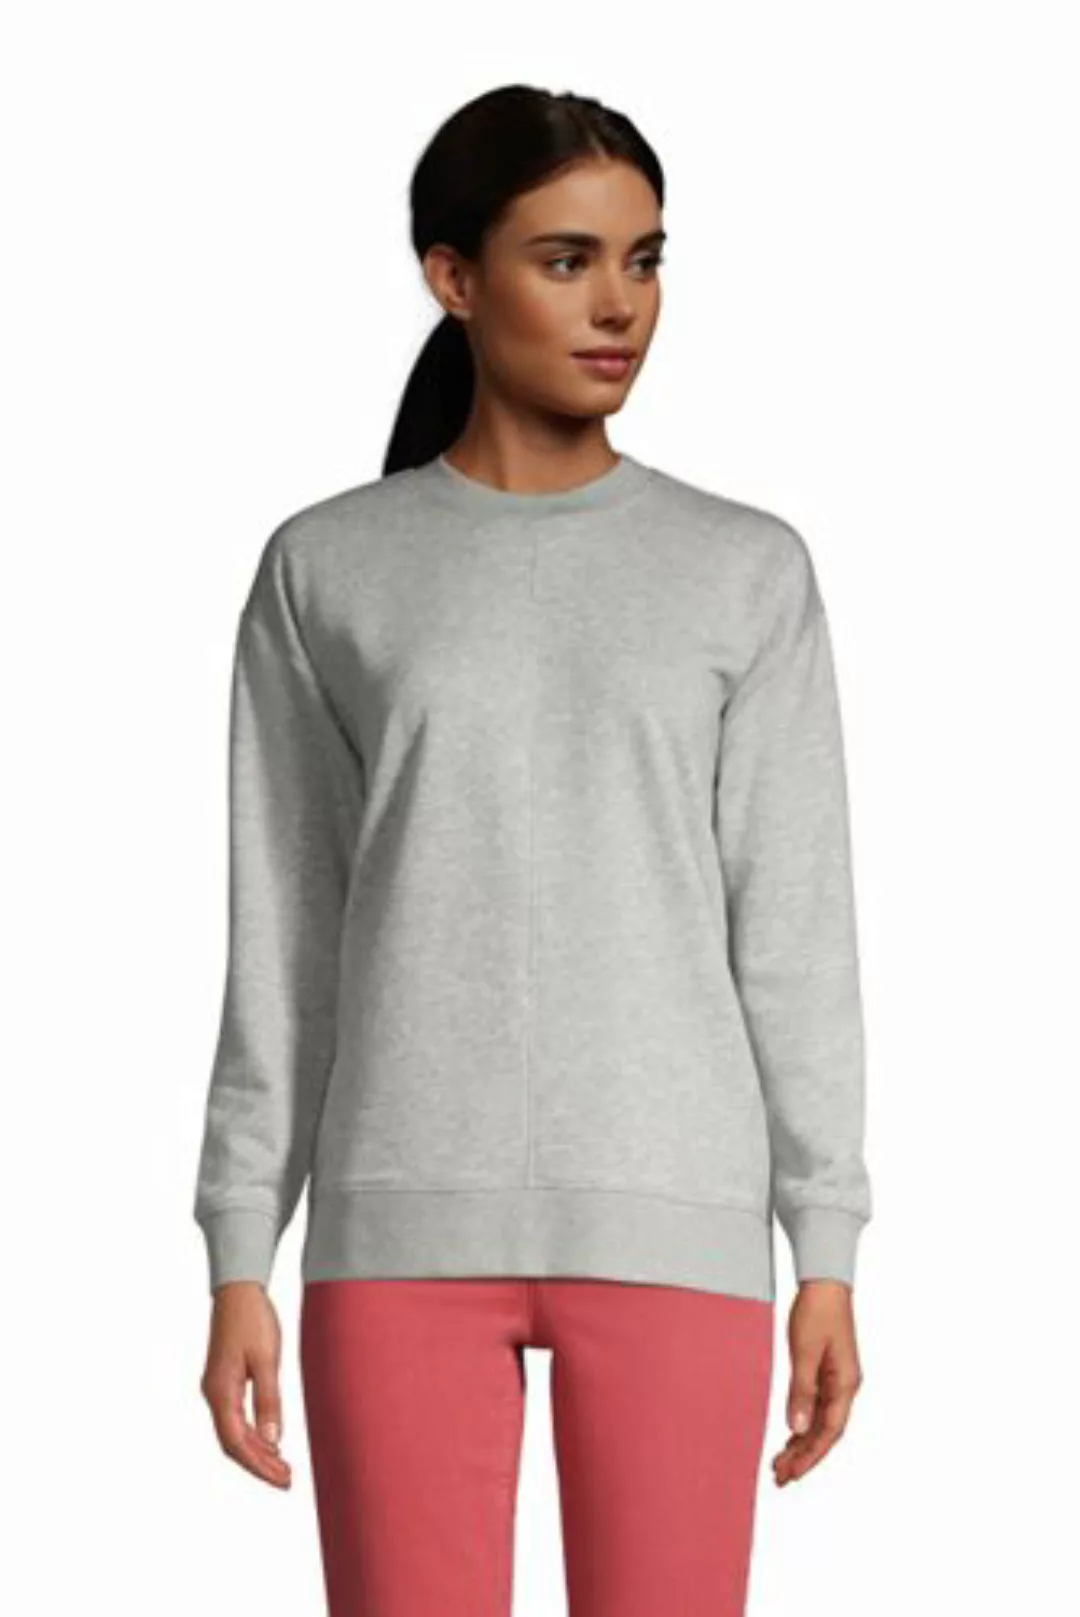 Sweatshirt, Damen, Größe: L Normal, Grau, Baumwolle, by Lands' End, Grau-Me günstig online kaufen